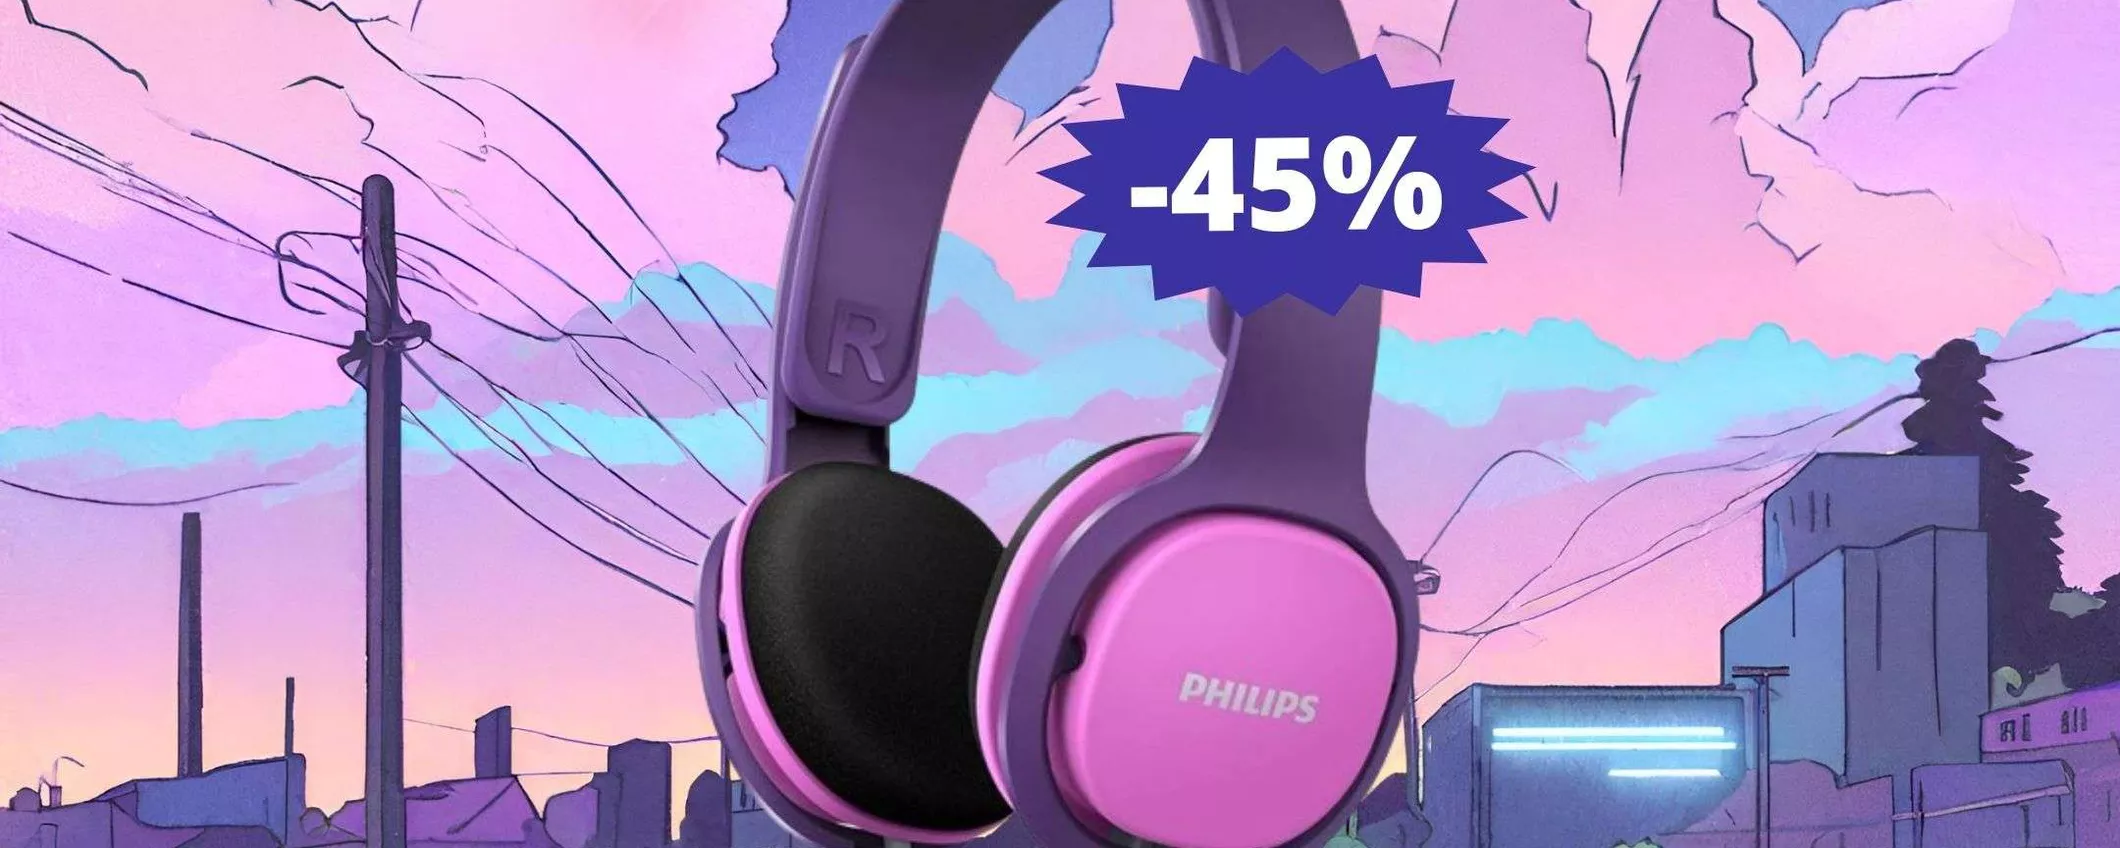 Cuffie Philips Kids: sconto FOLLE del 45% su Amazon